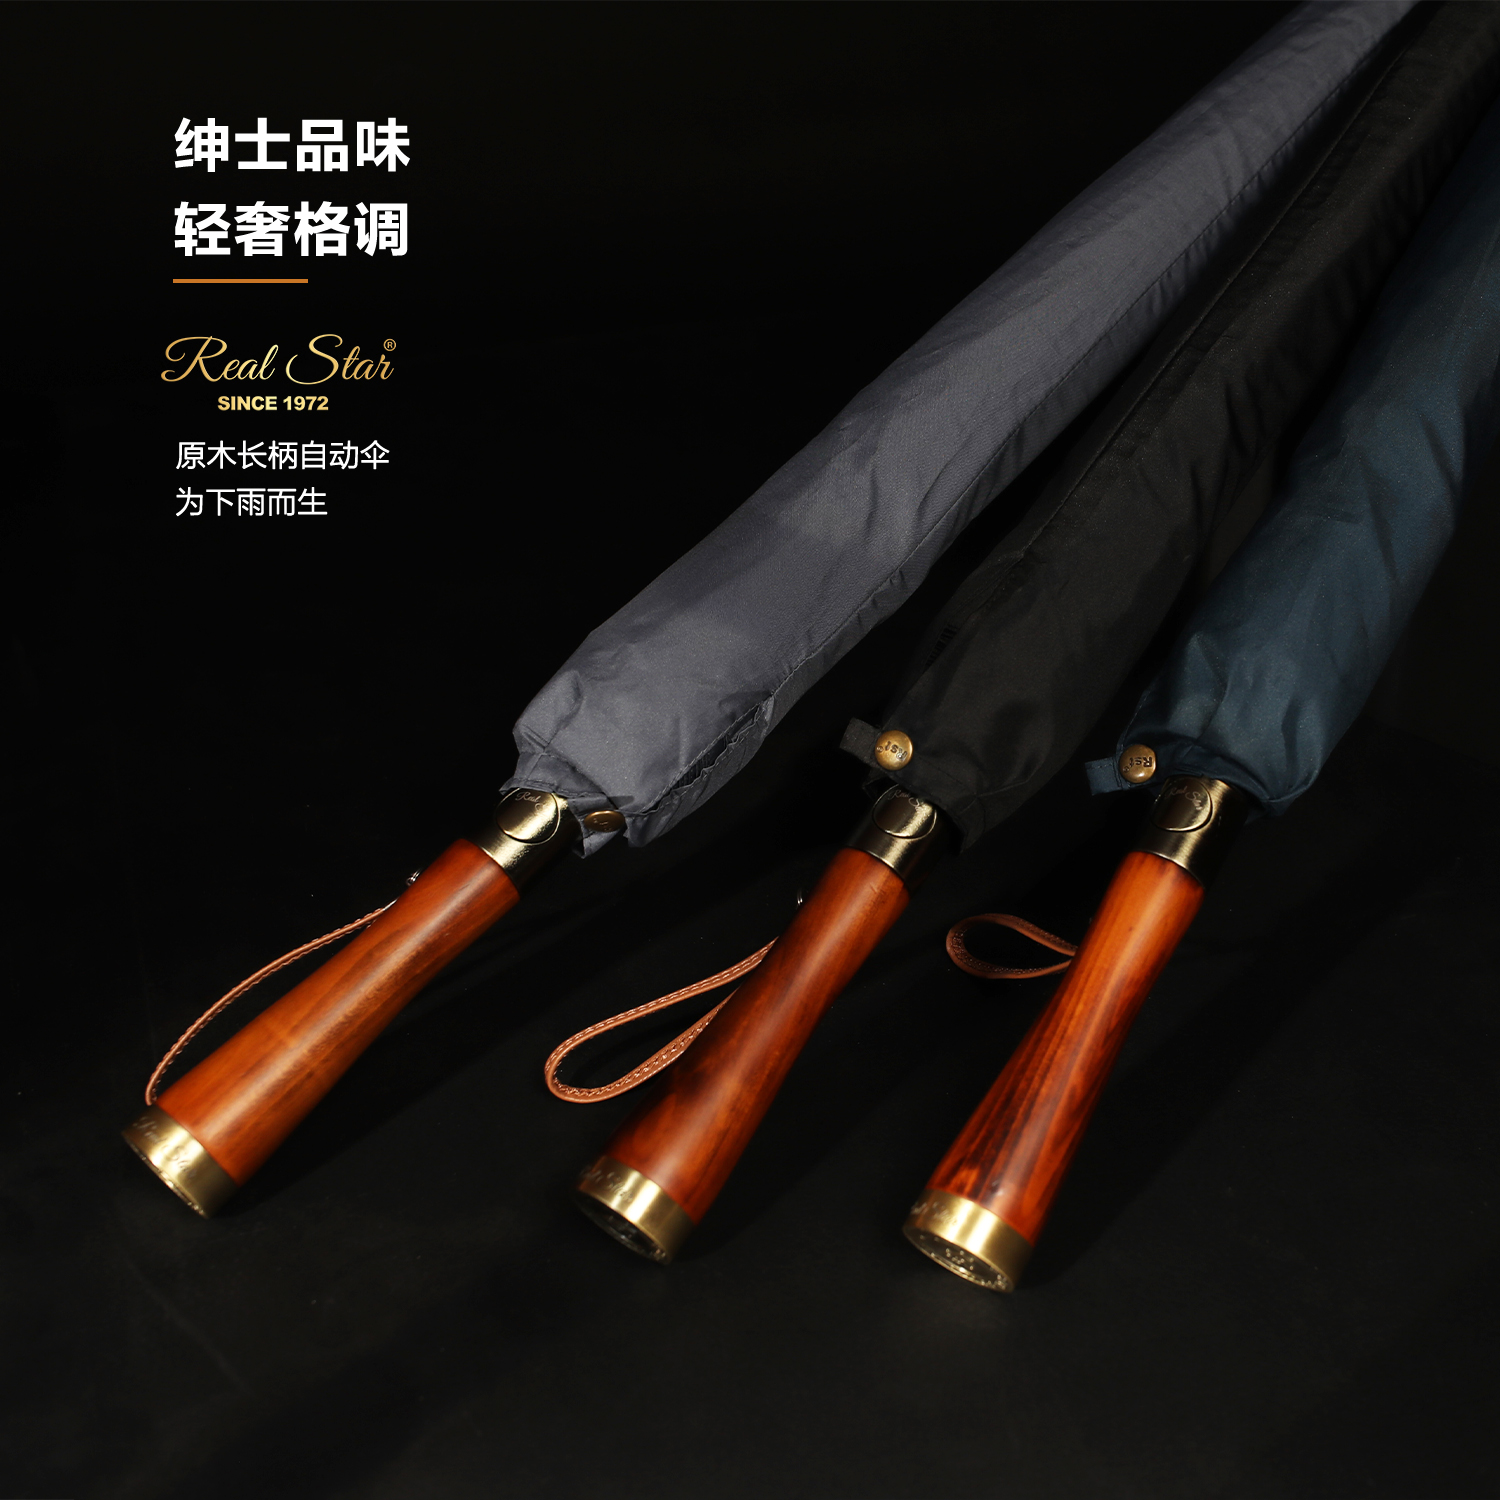 xingbao umbrella 1915 wooden handle golf umbrella long handle plain 16 framework umbrella gift umbrella long umbrella wholesale